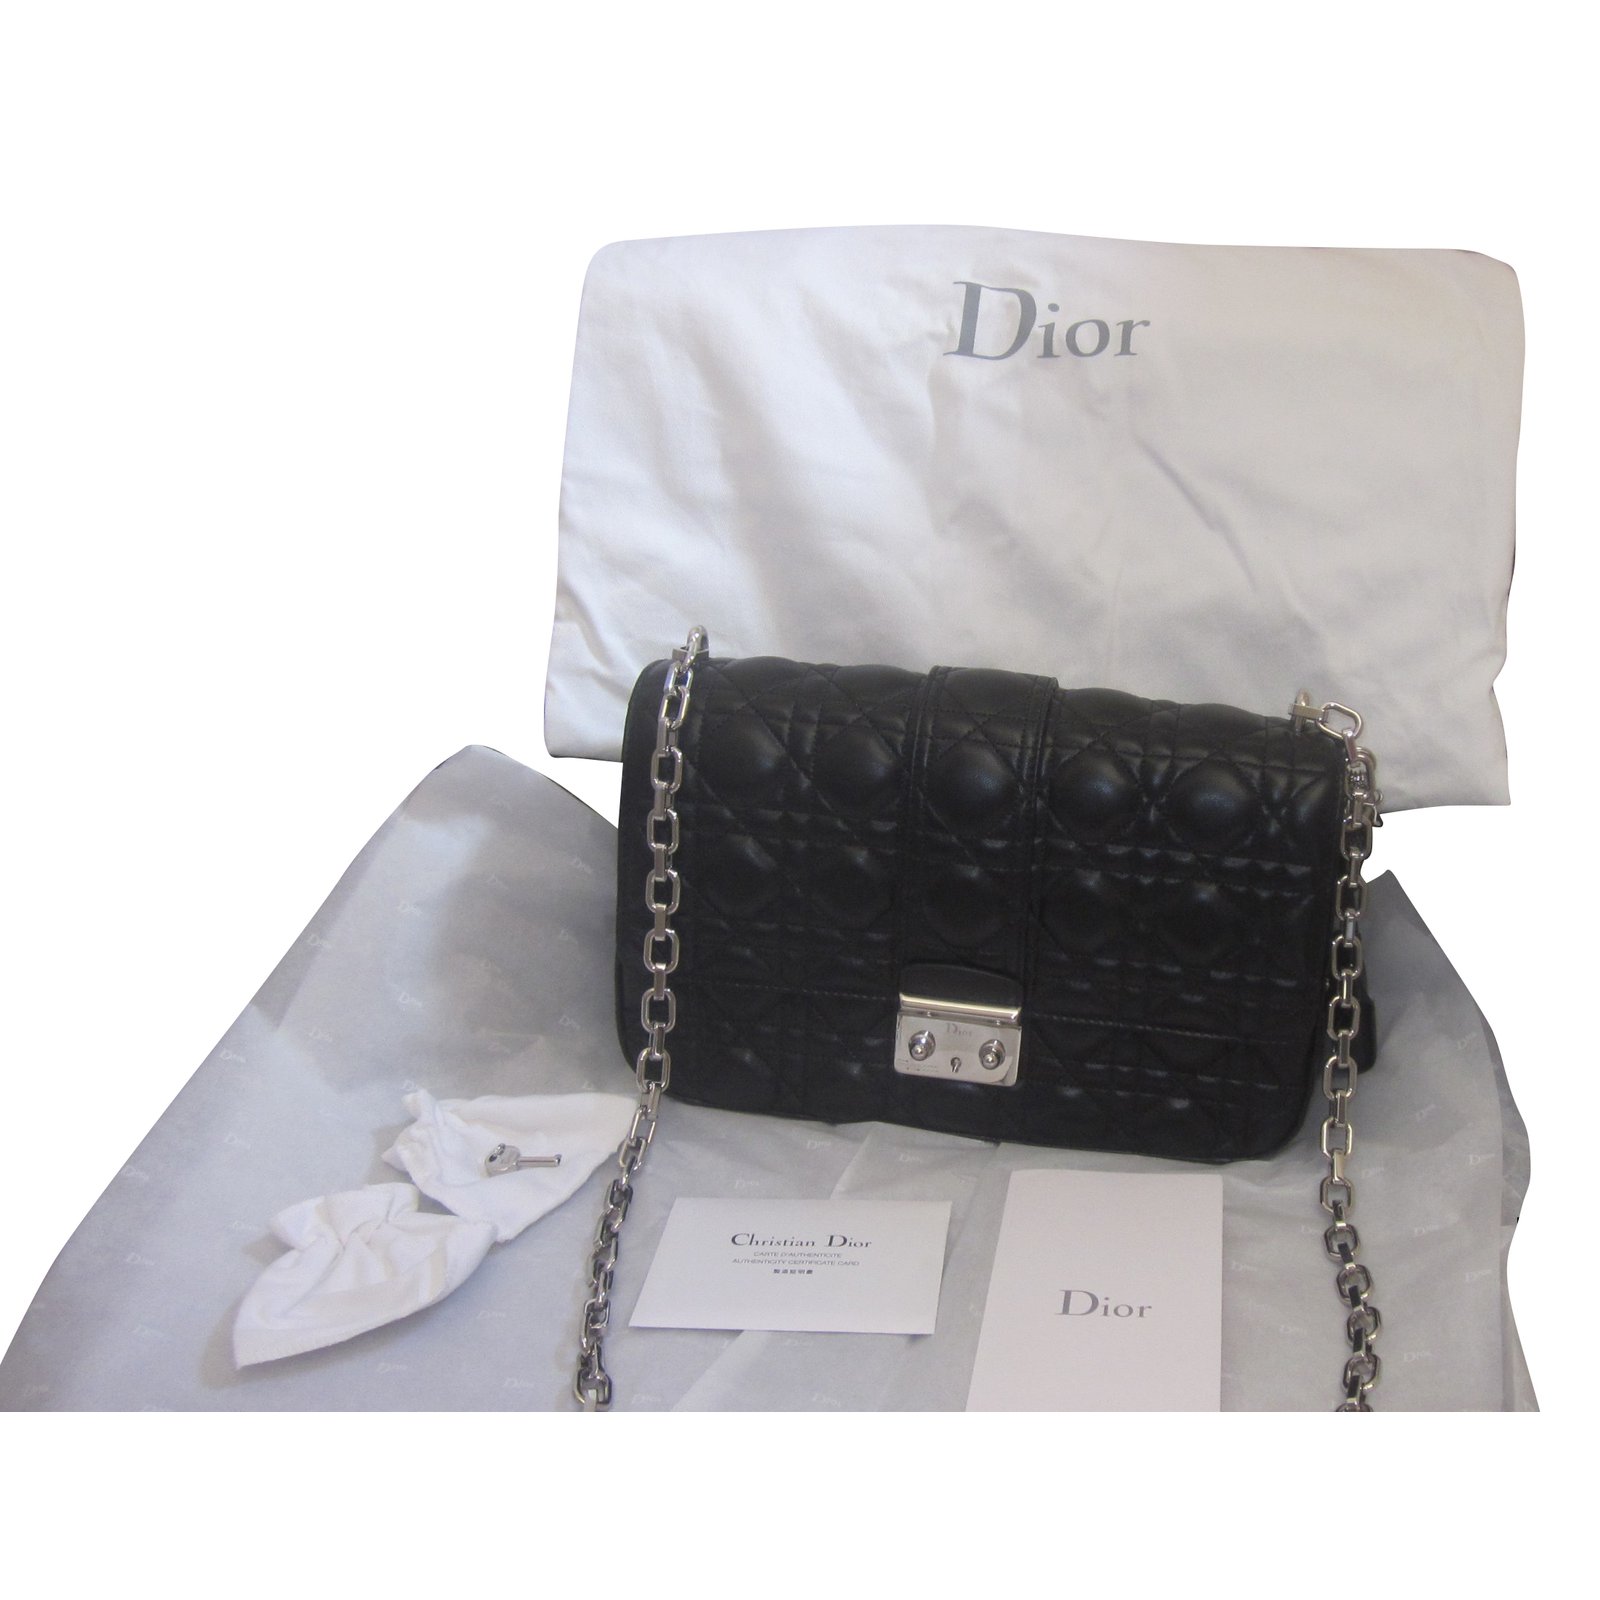 dior black leather bag